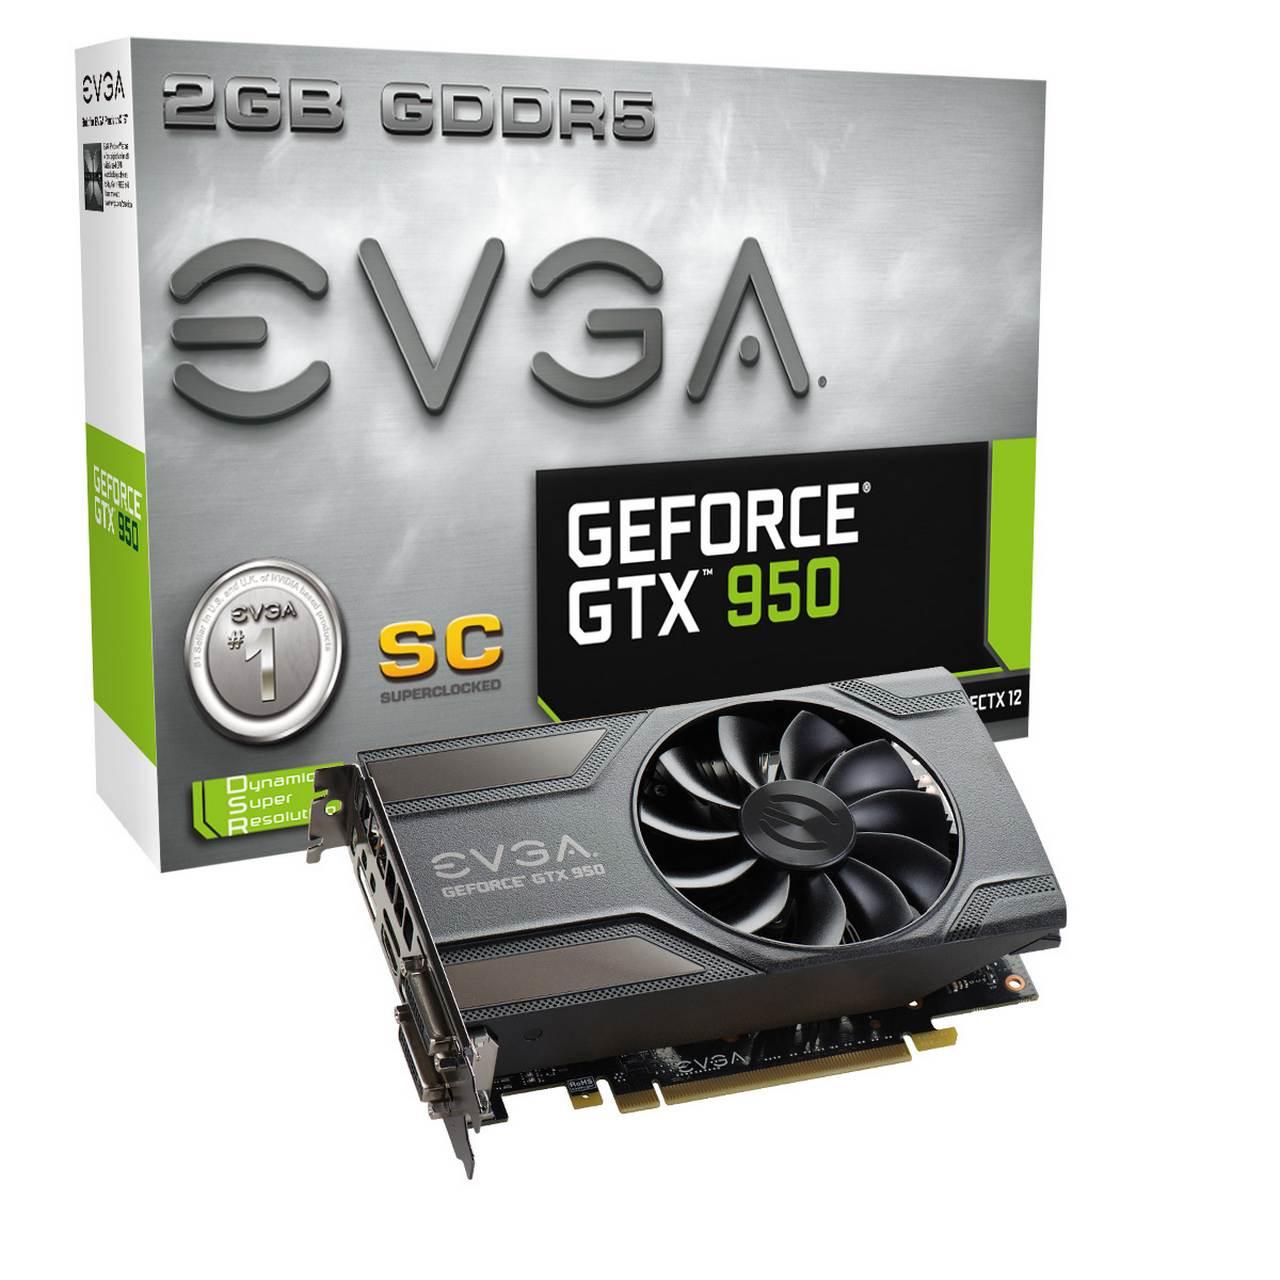 EVGA ra mắt phiên bản "GeForce GTX 950" tiết kiệm điện